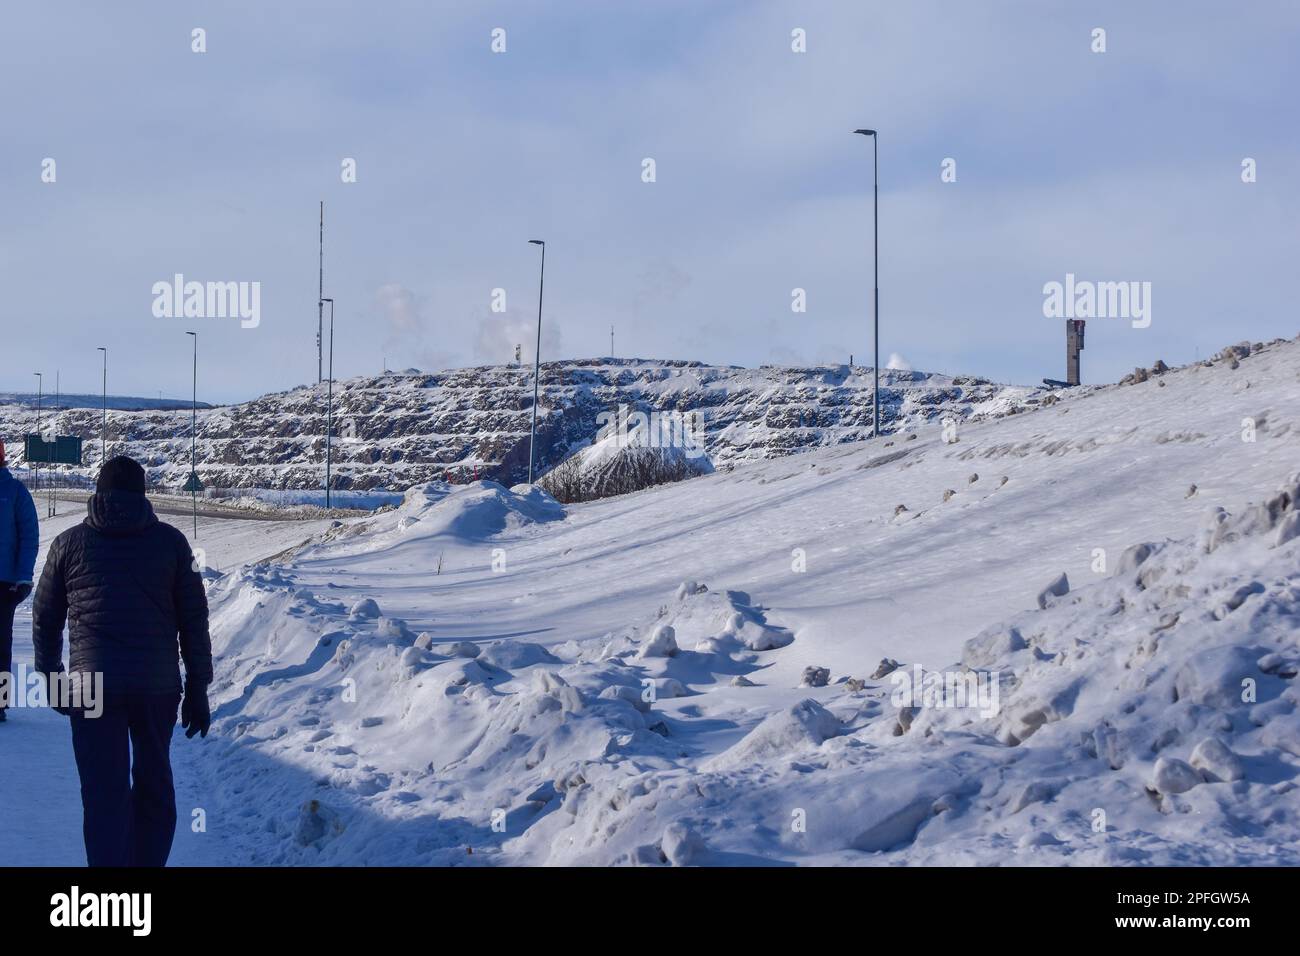 View of Kiruna city and the iron ore mine on the mountain Kiirunavaara seen from the snowy mountain peak Luossavaara. Stock Photo